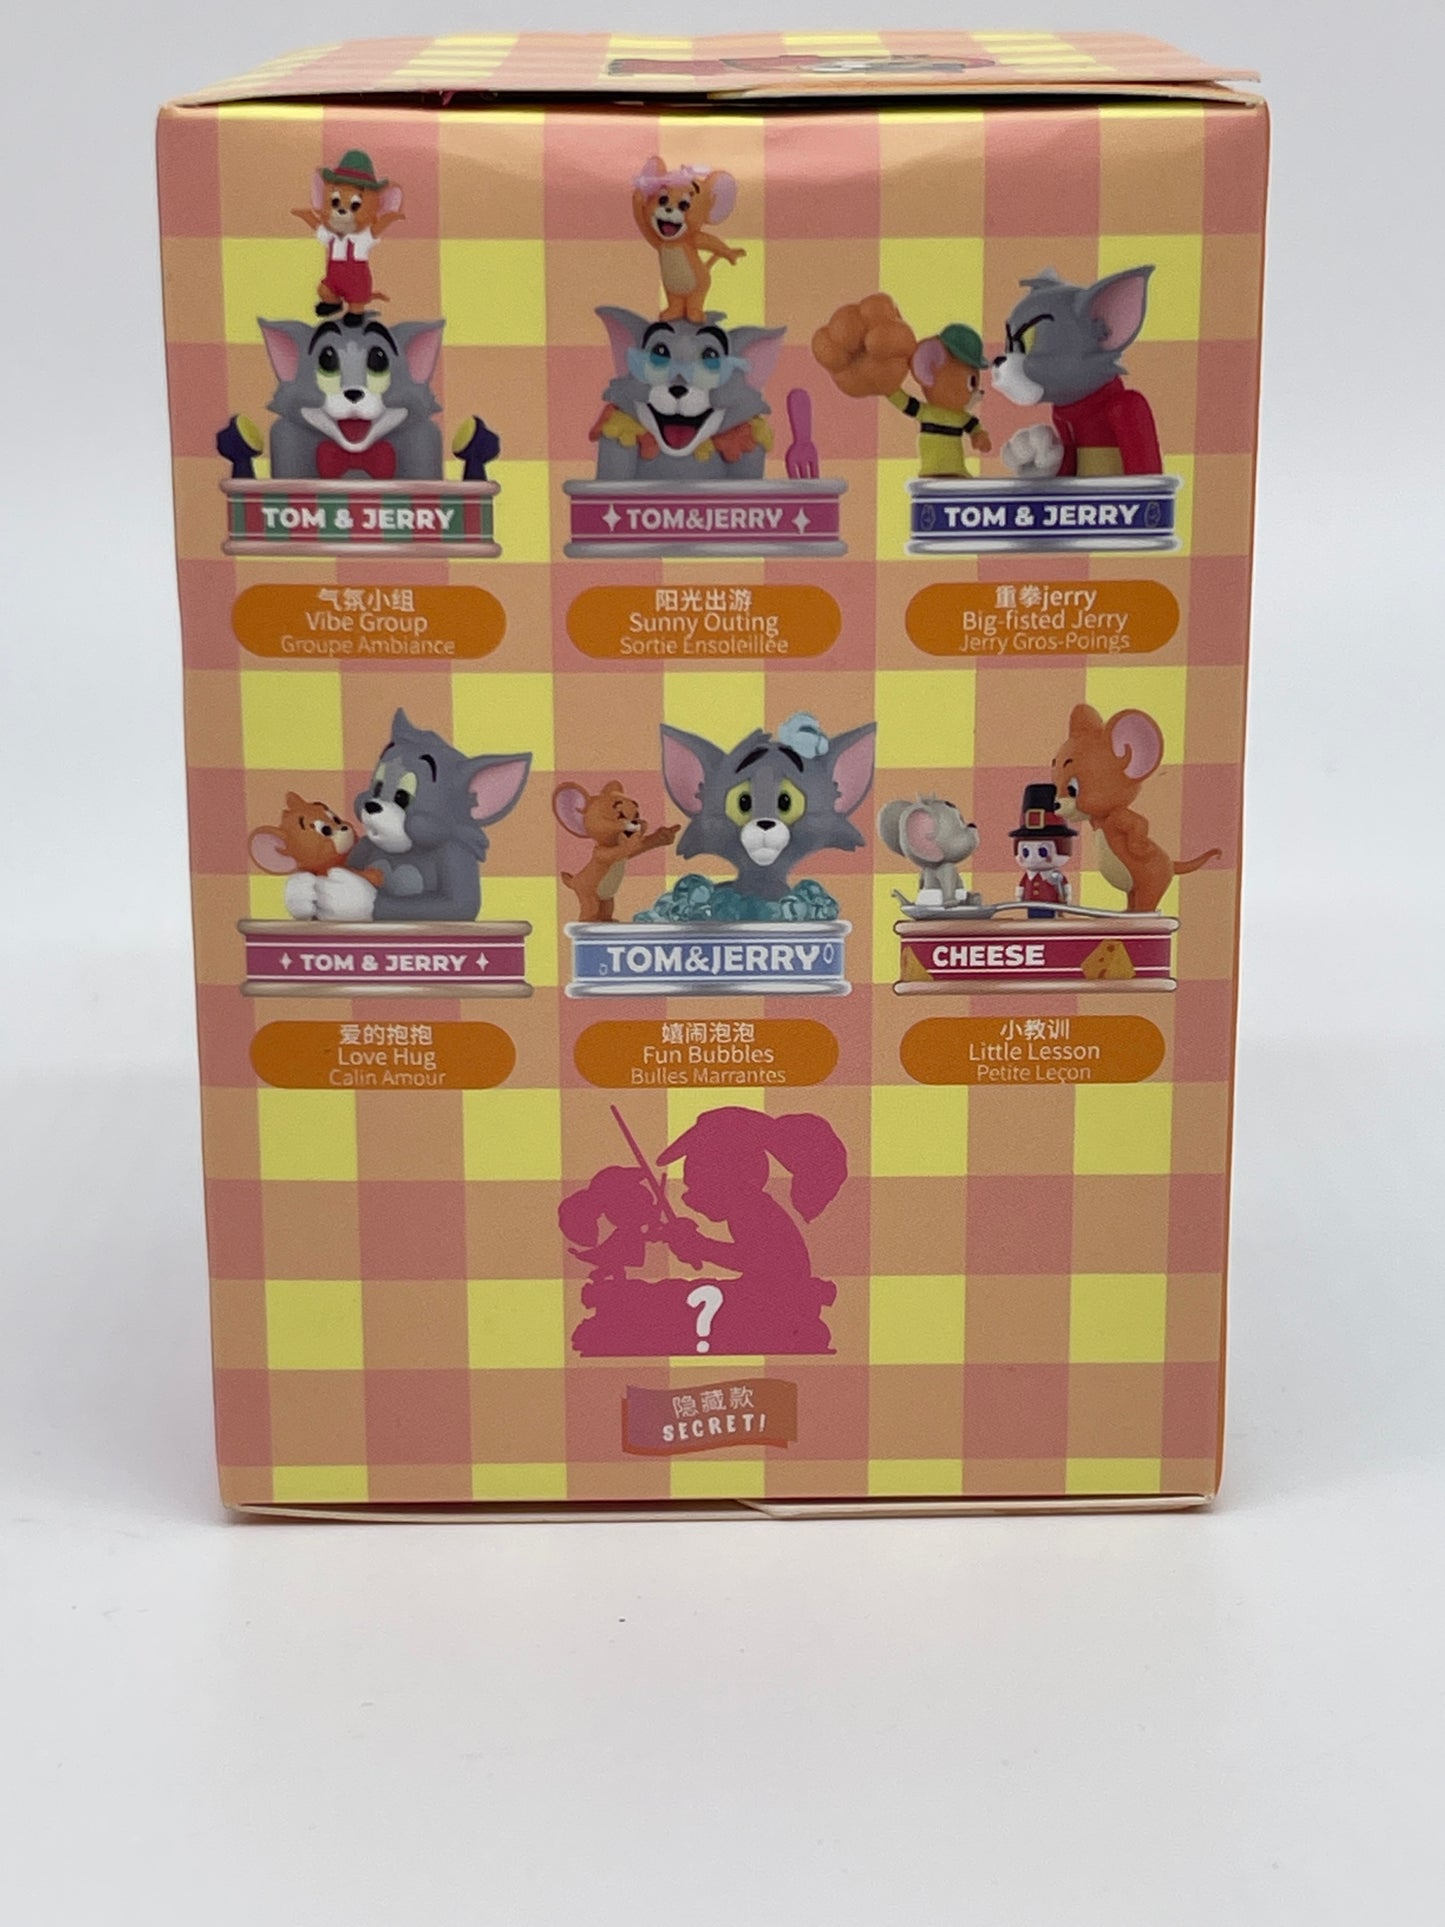 MINISO Japan "Tom & Jerry Can Collection" Blindbox 7 verschiedene Figuren